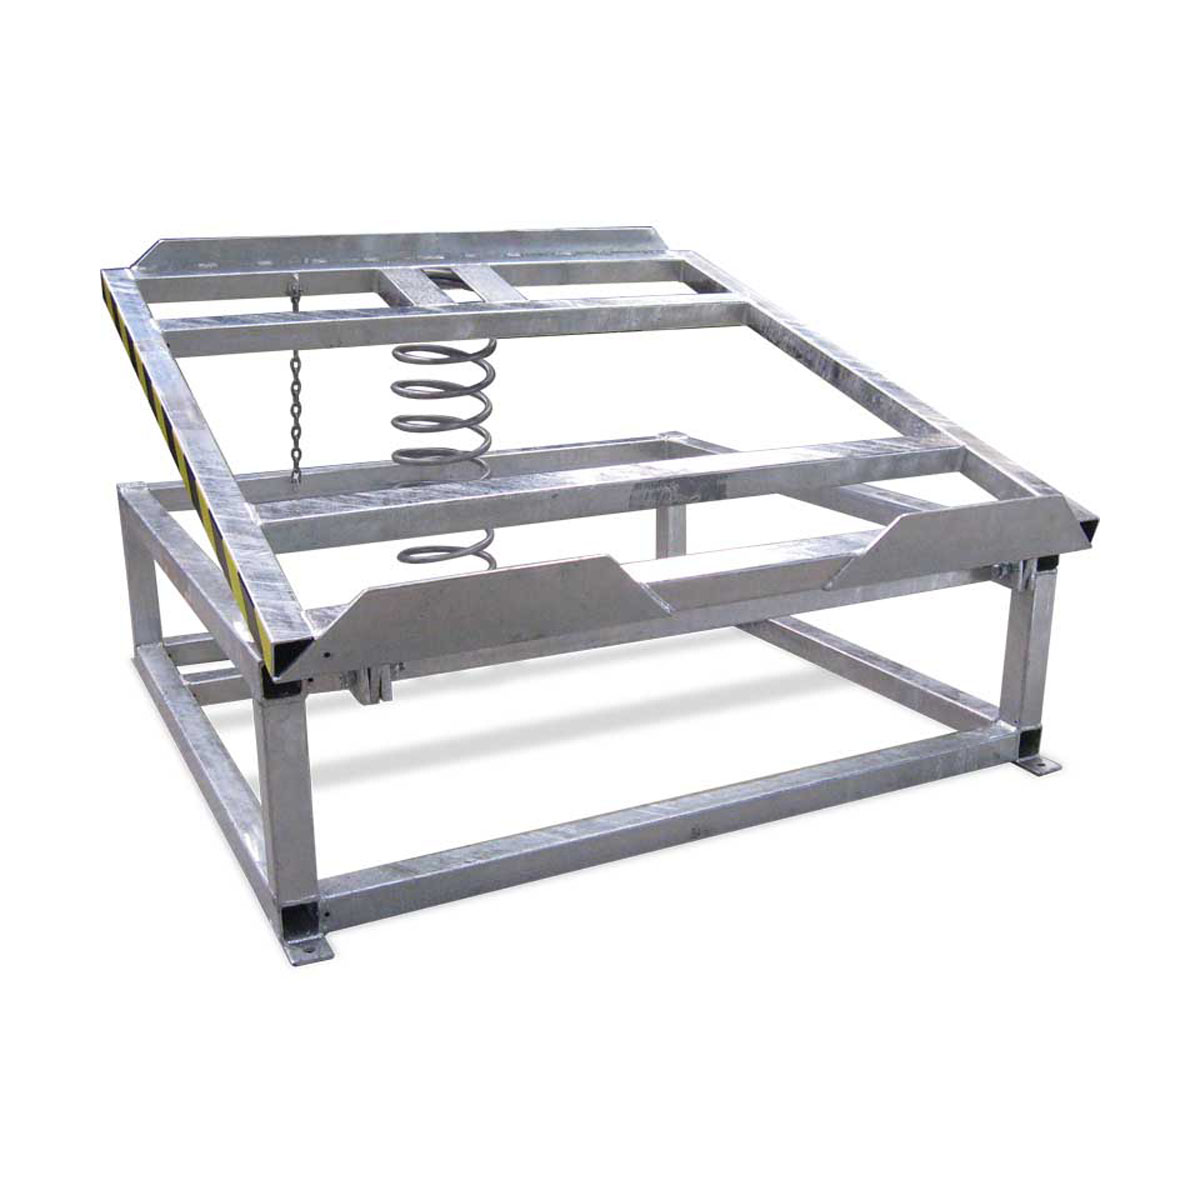 Buy Tilting Lift Table (Spring - Galvanised) in Tilt Lift Tables from Astrolift NZ